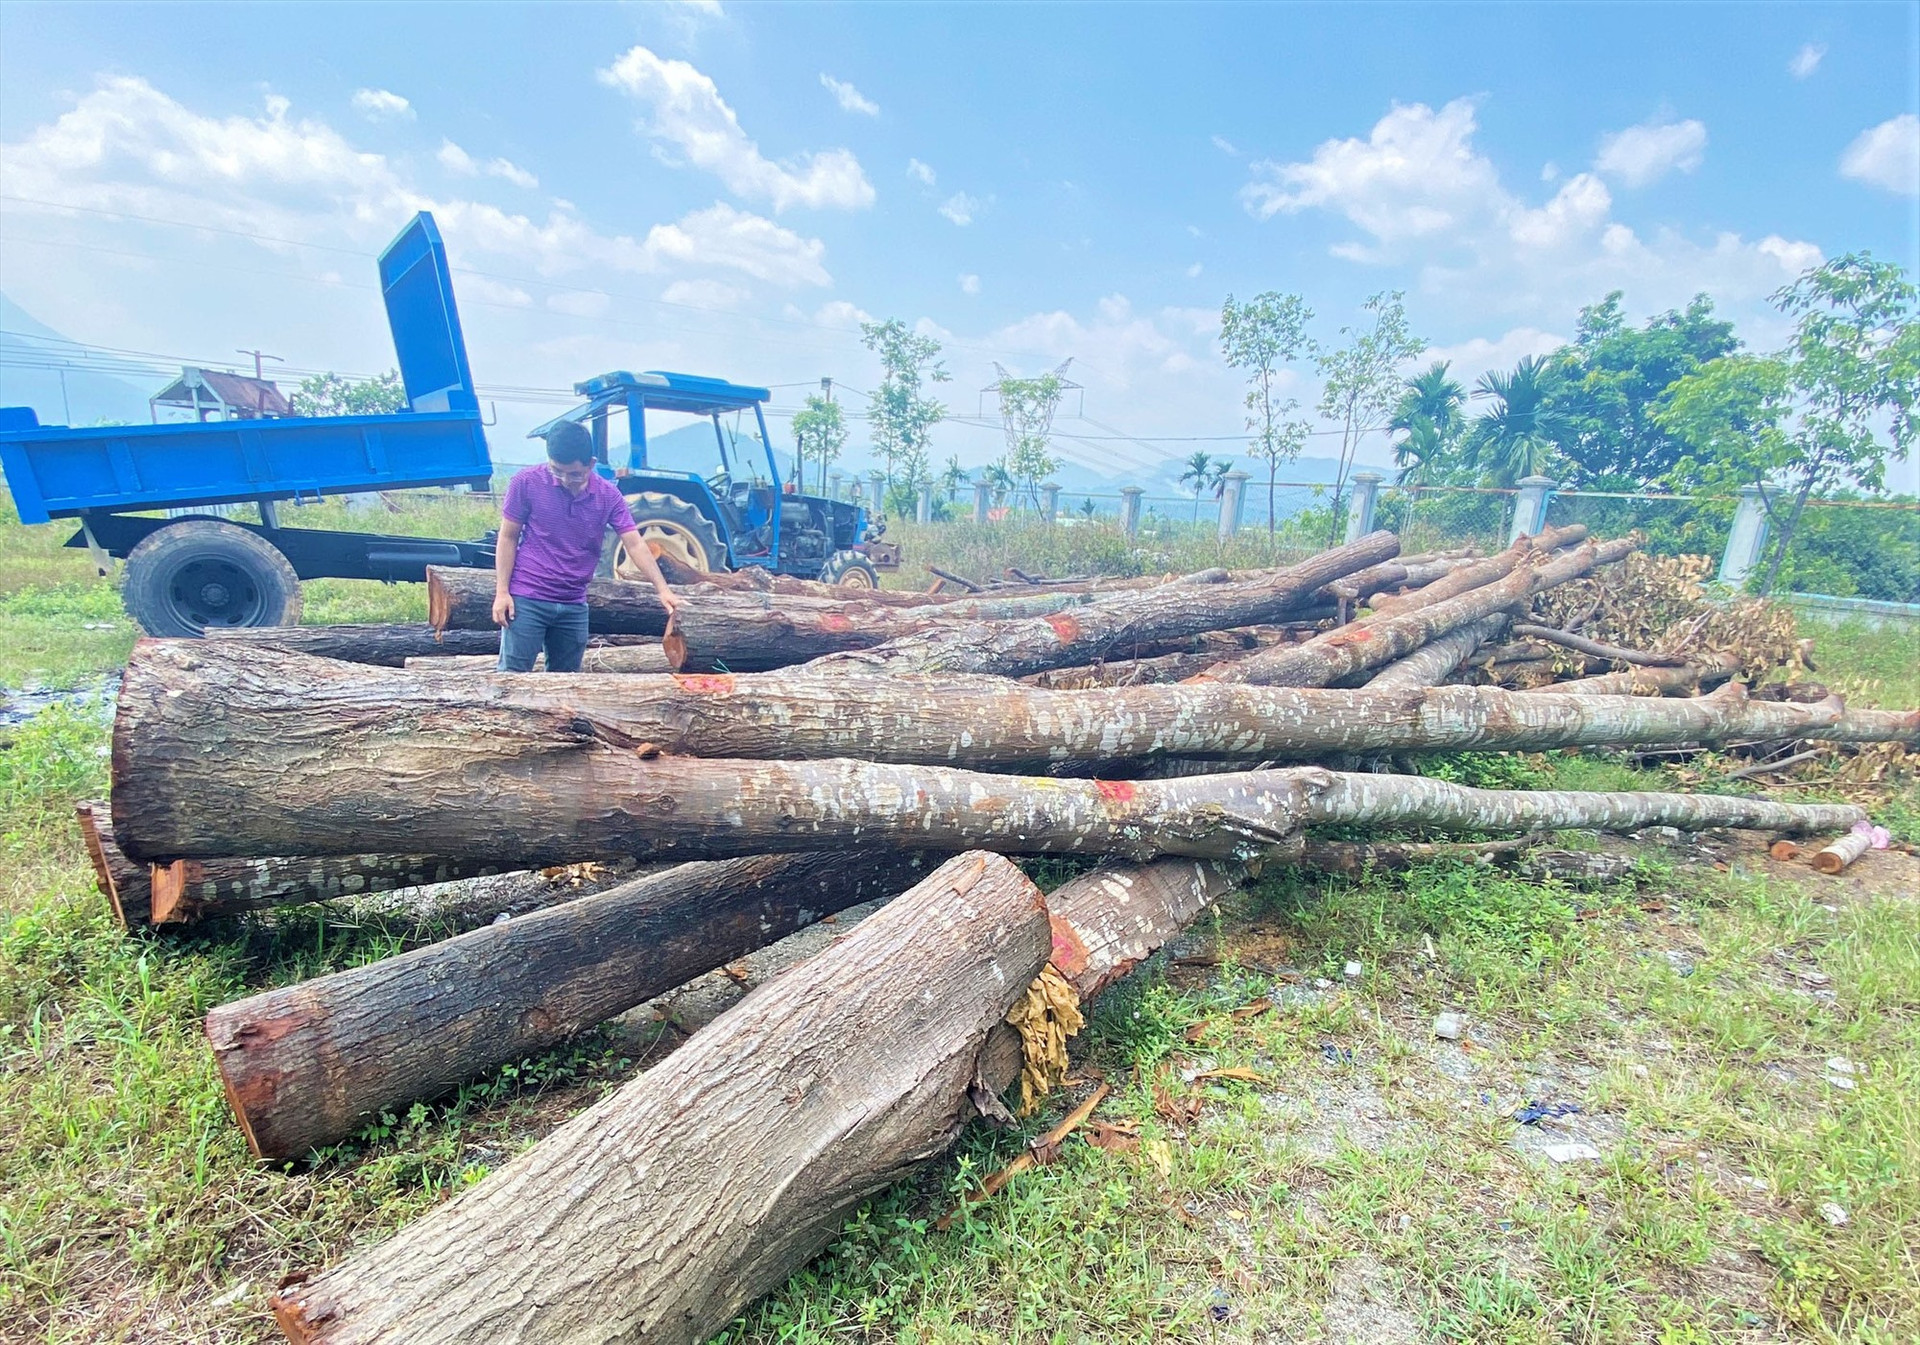 Toàn bộ 17 cây sao đen đang được cơ quan chức năng huyện Phước Sơn lập thủ tục thanh lý theo quy định pháp luật. Ảnh: LÊ TRUNG